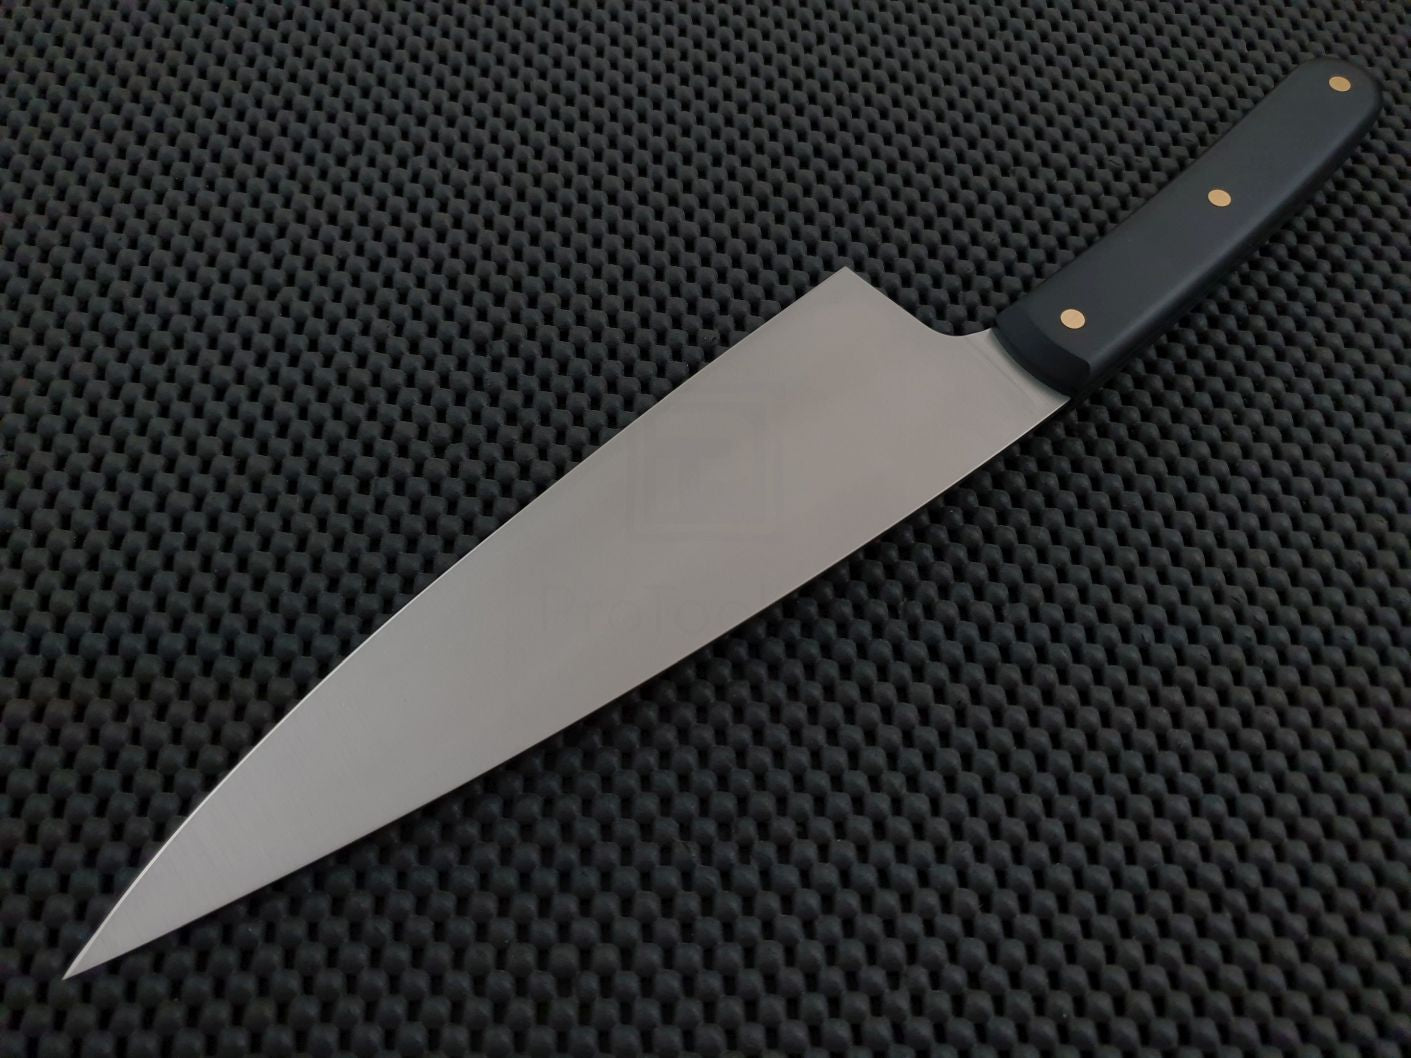 Professional Japanese Knives, Sandvik 14c28n Knife Kitchen